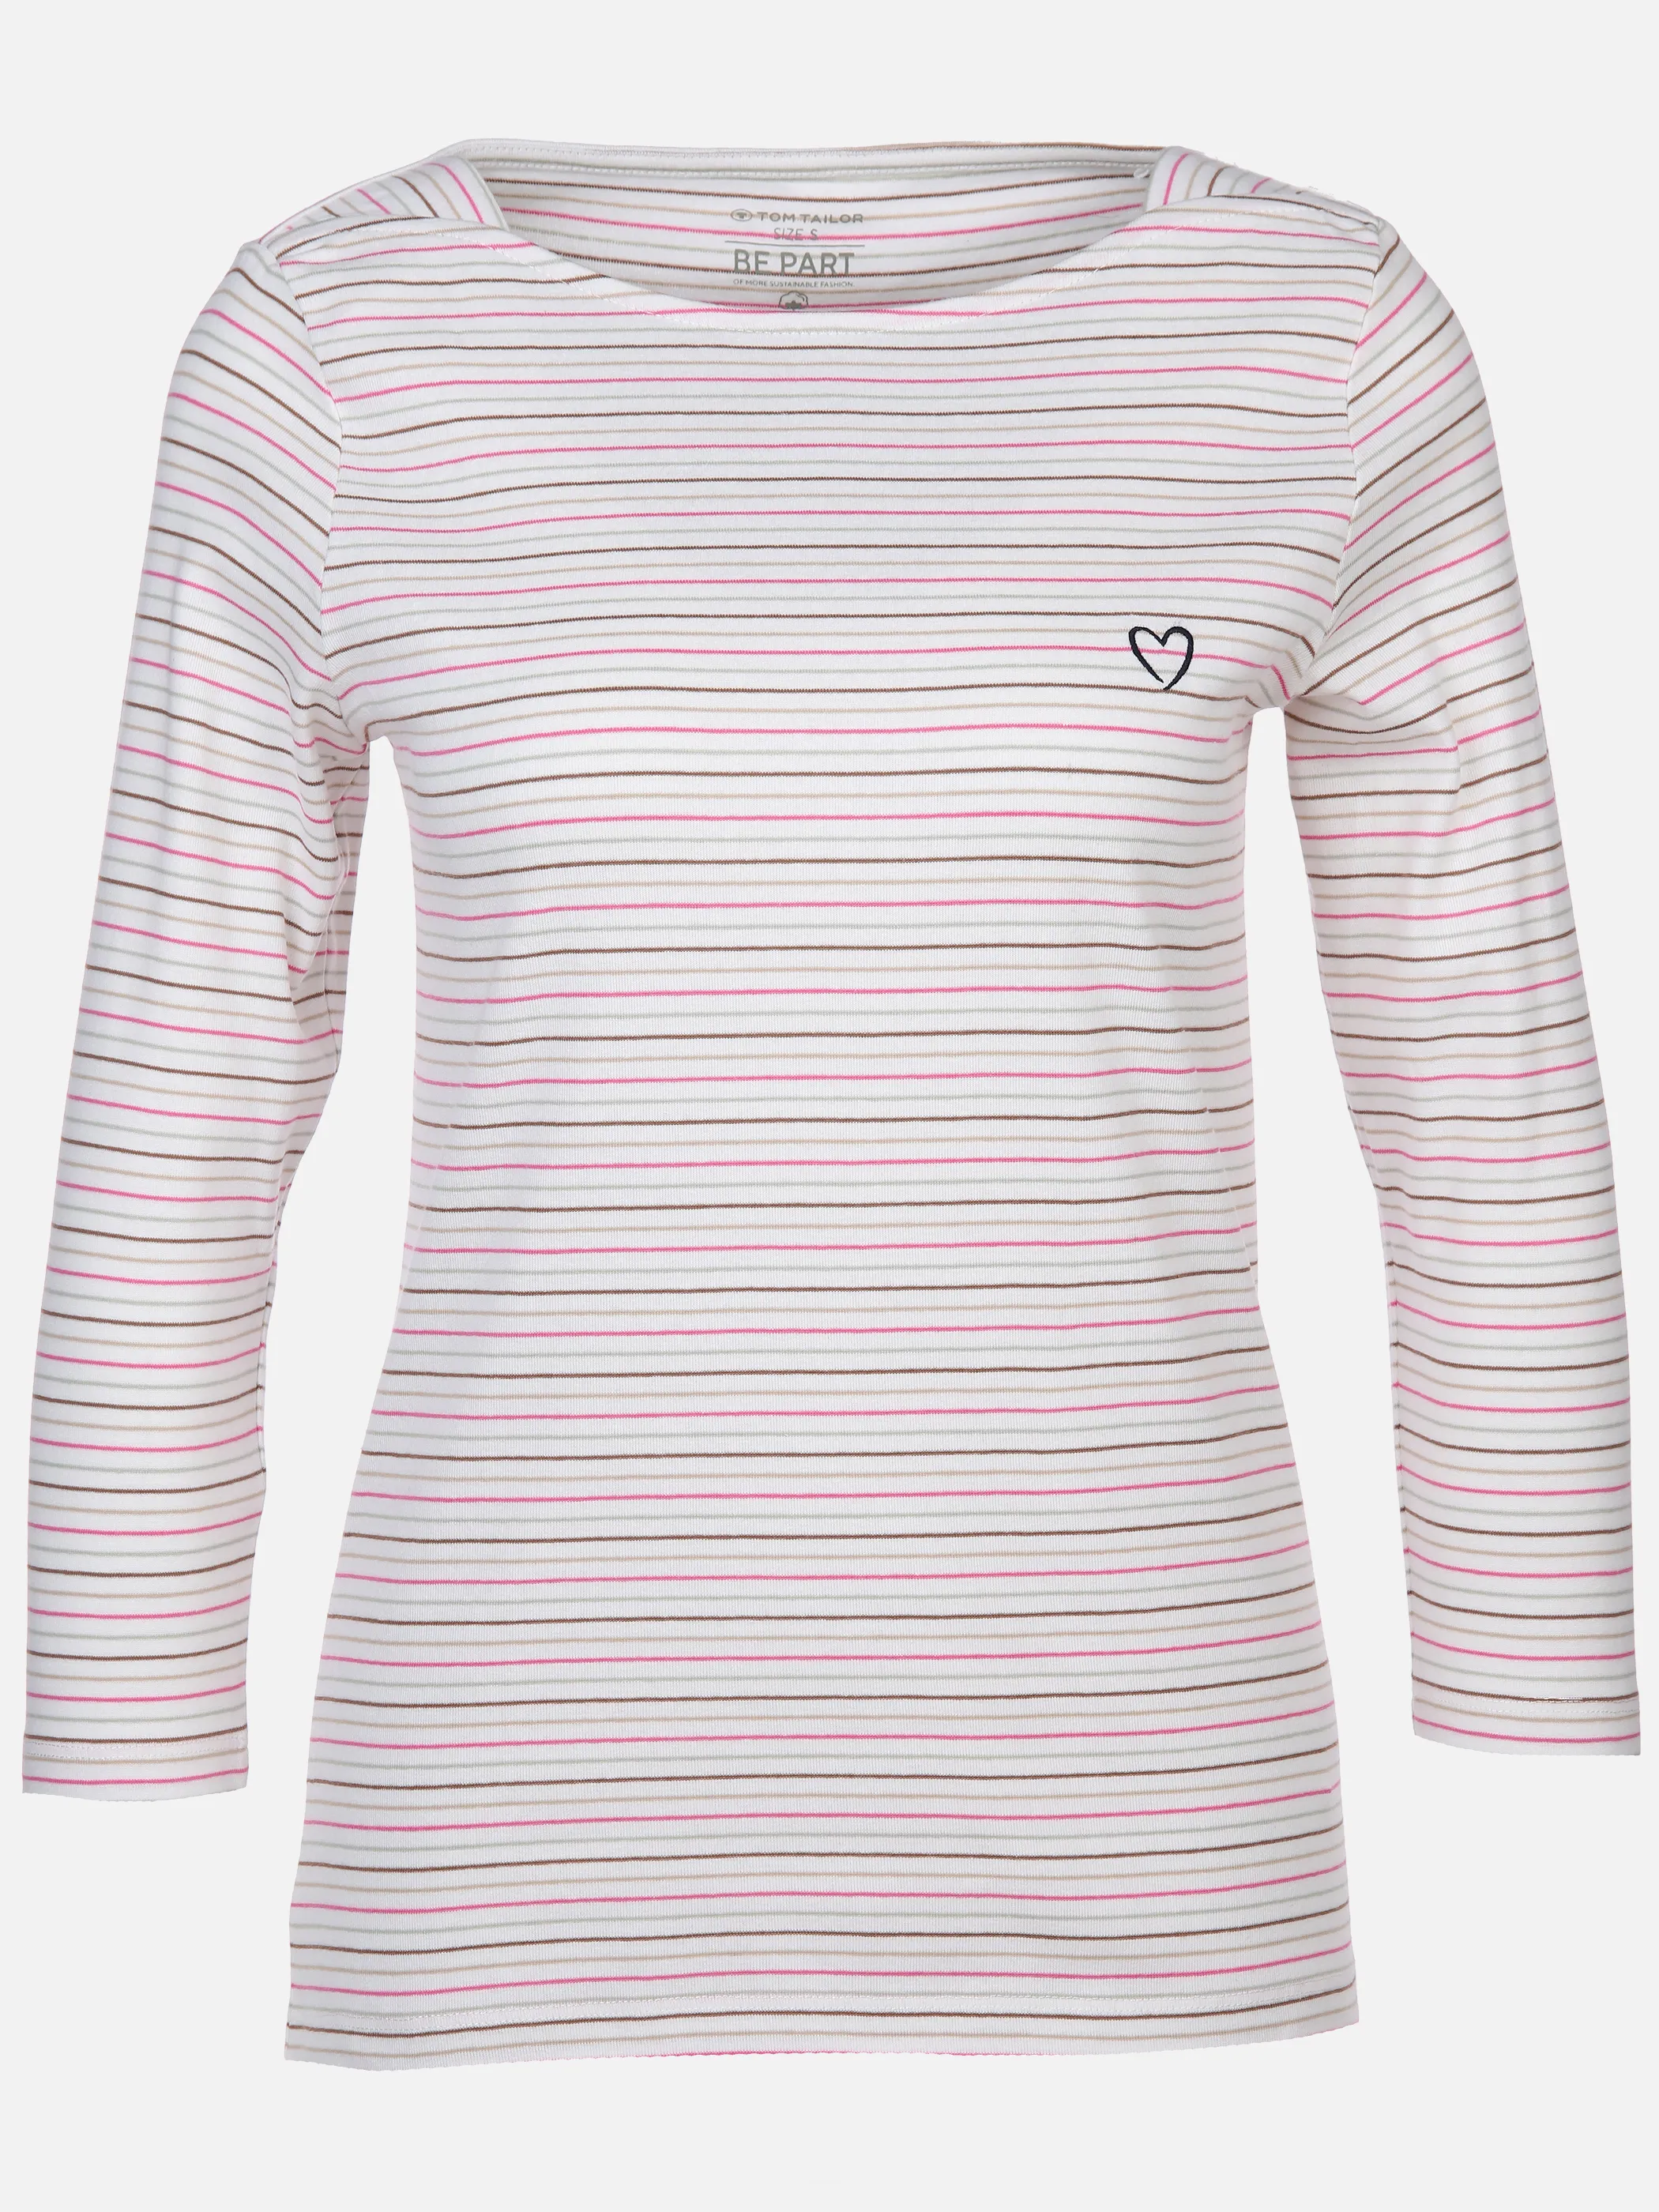 Tom Tailor 1040545 NOS T-shirt boat neck stripe Pink 890585 35715 1